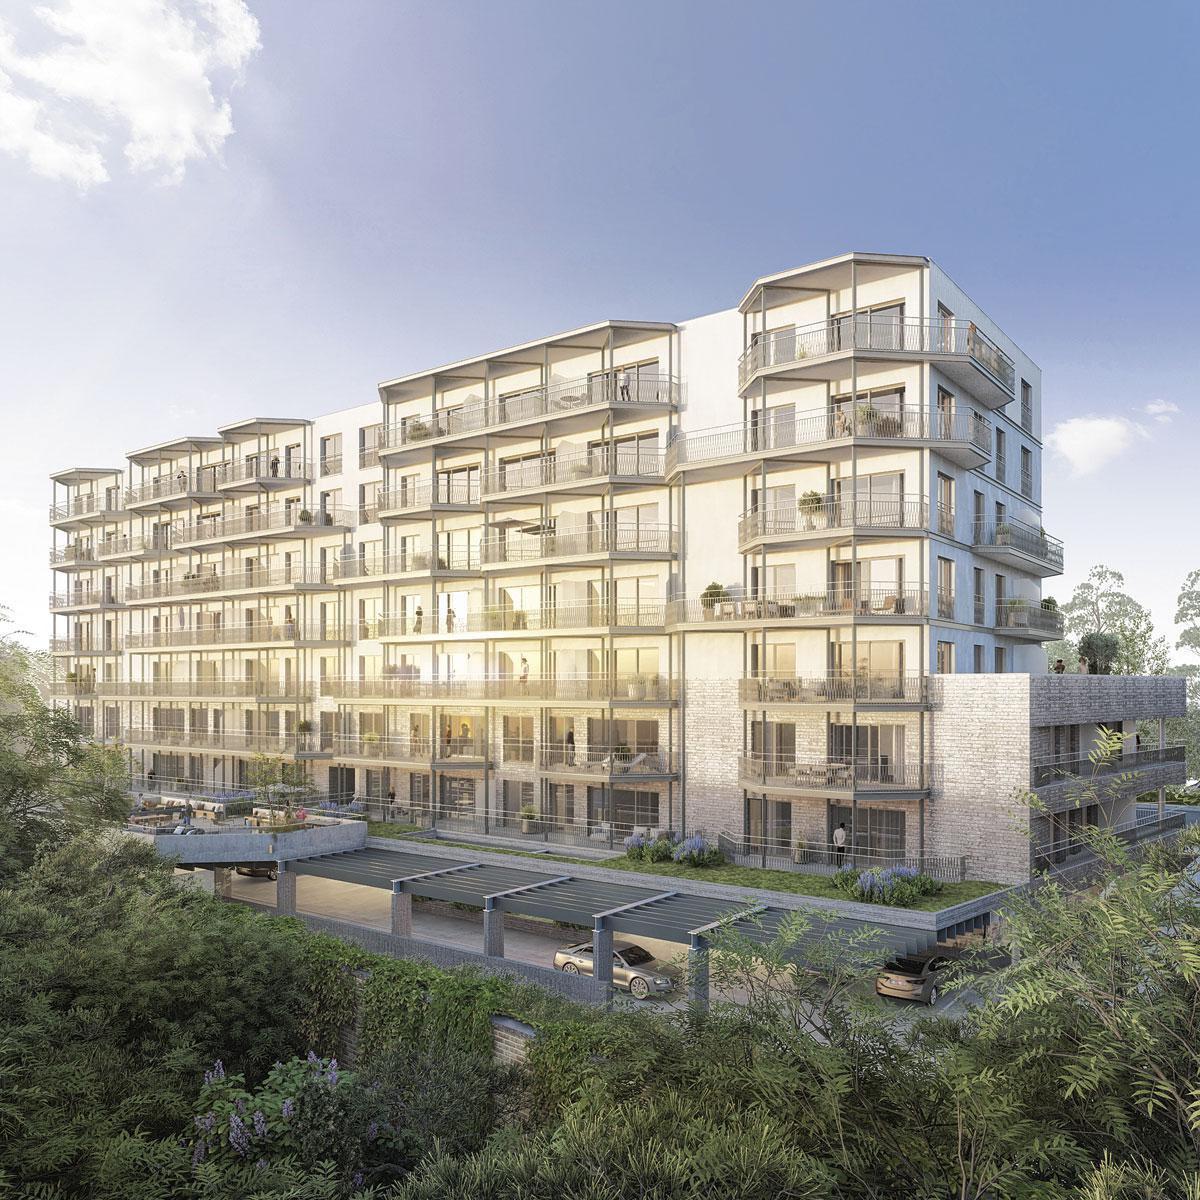 LE JULES. Situé le long de l'avenue Jules Bordet à Evere, ce projet de 80 appartements développé par Ciril sera livré en 2025.